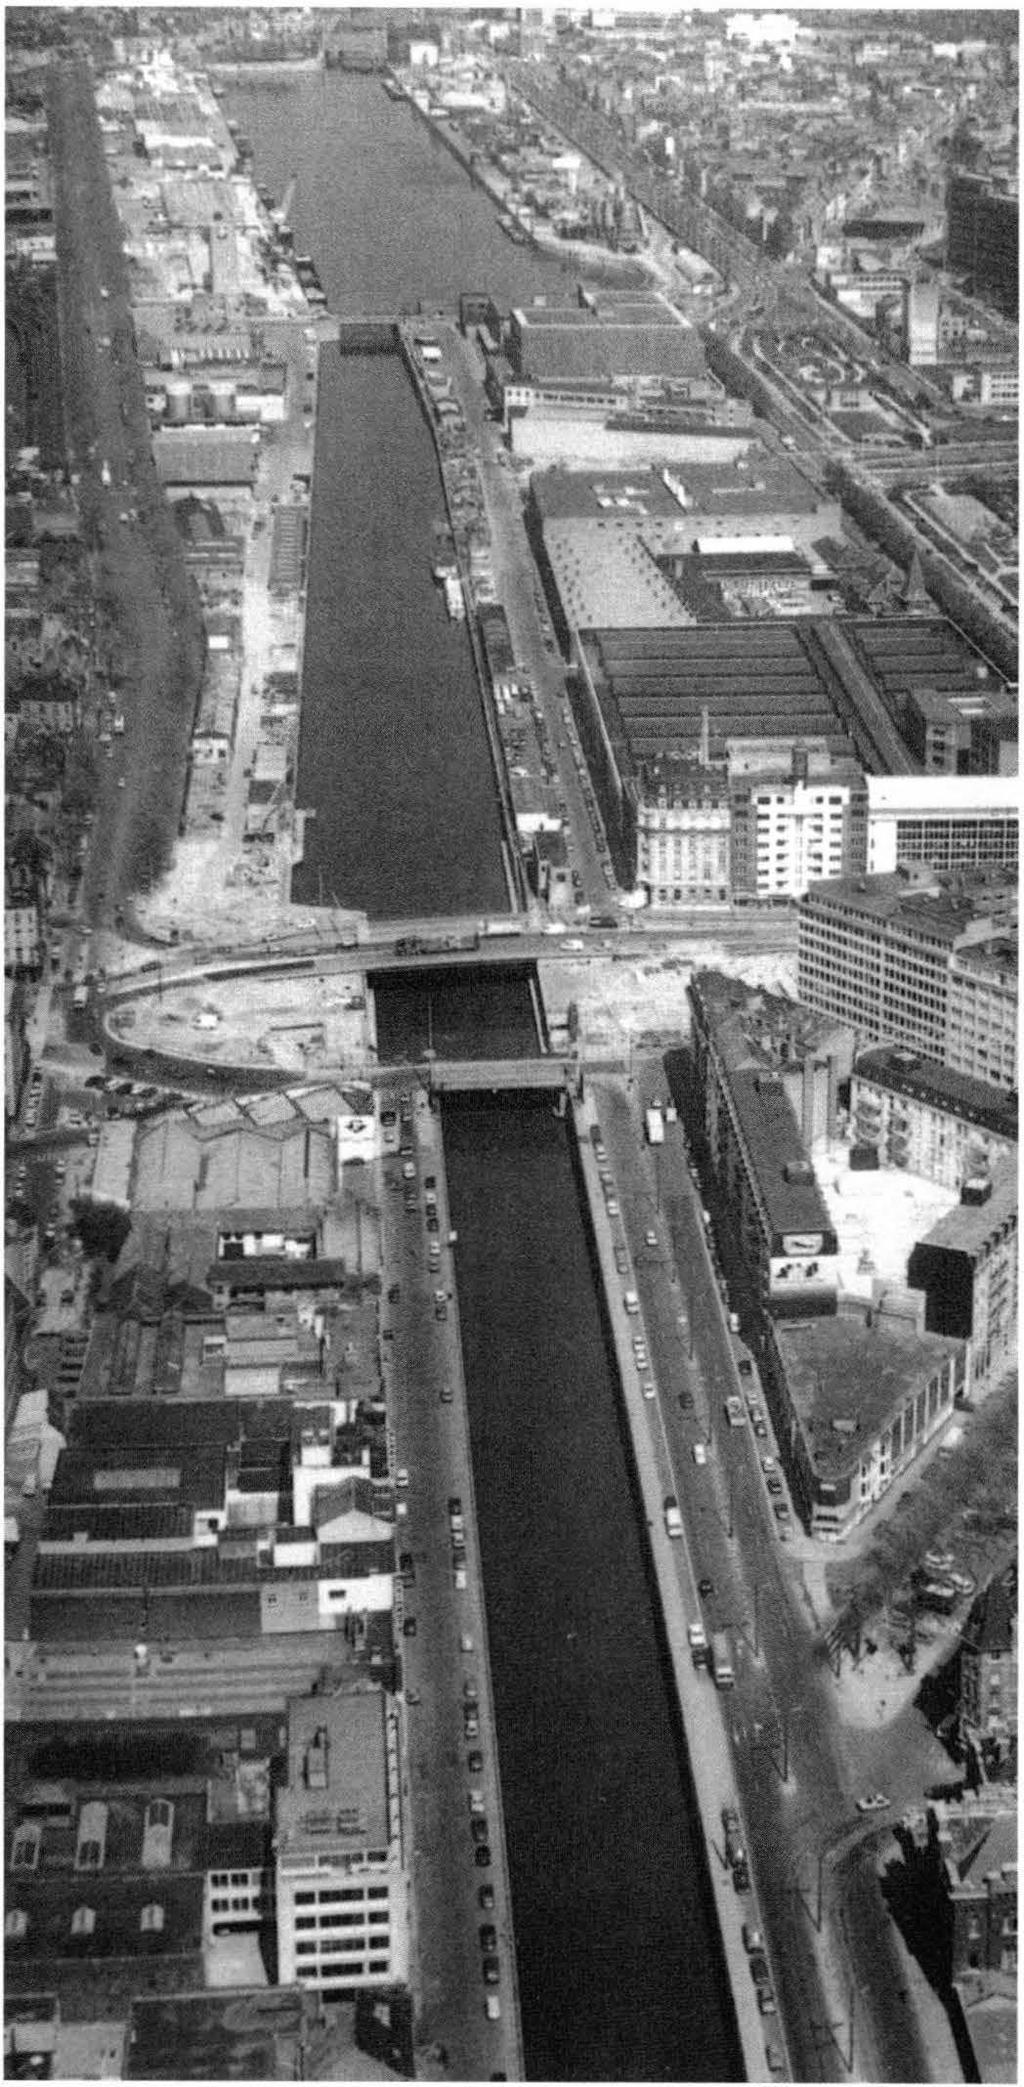 UN CANAL ET UN PORT DE PLUS DE QUATRE SIÈCLES Le canal de Willebroeck, inauguré en 1561, fut l'un des premiers canaux construits en Europe.